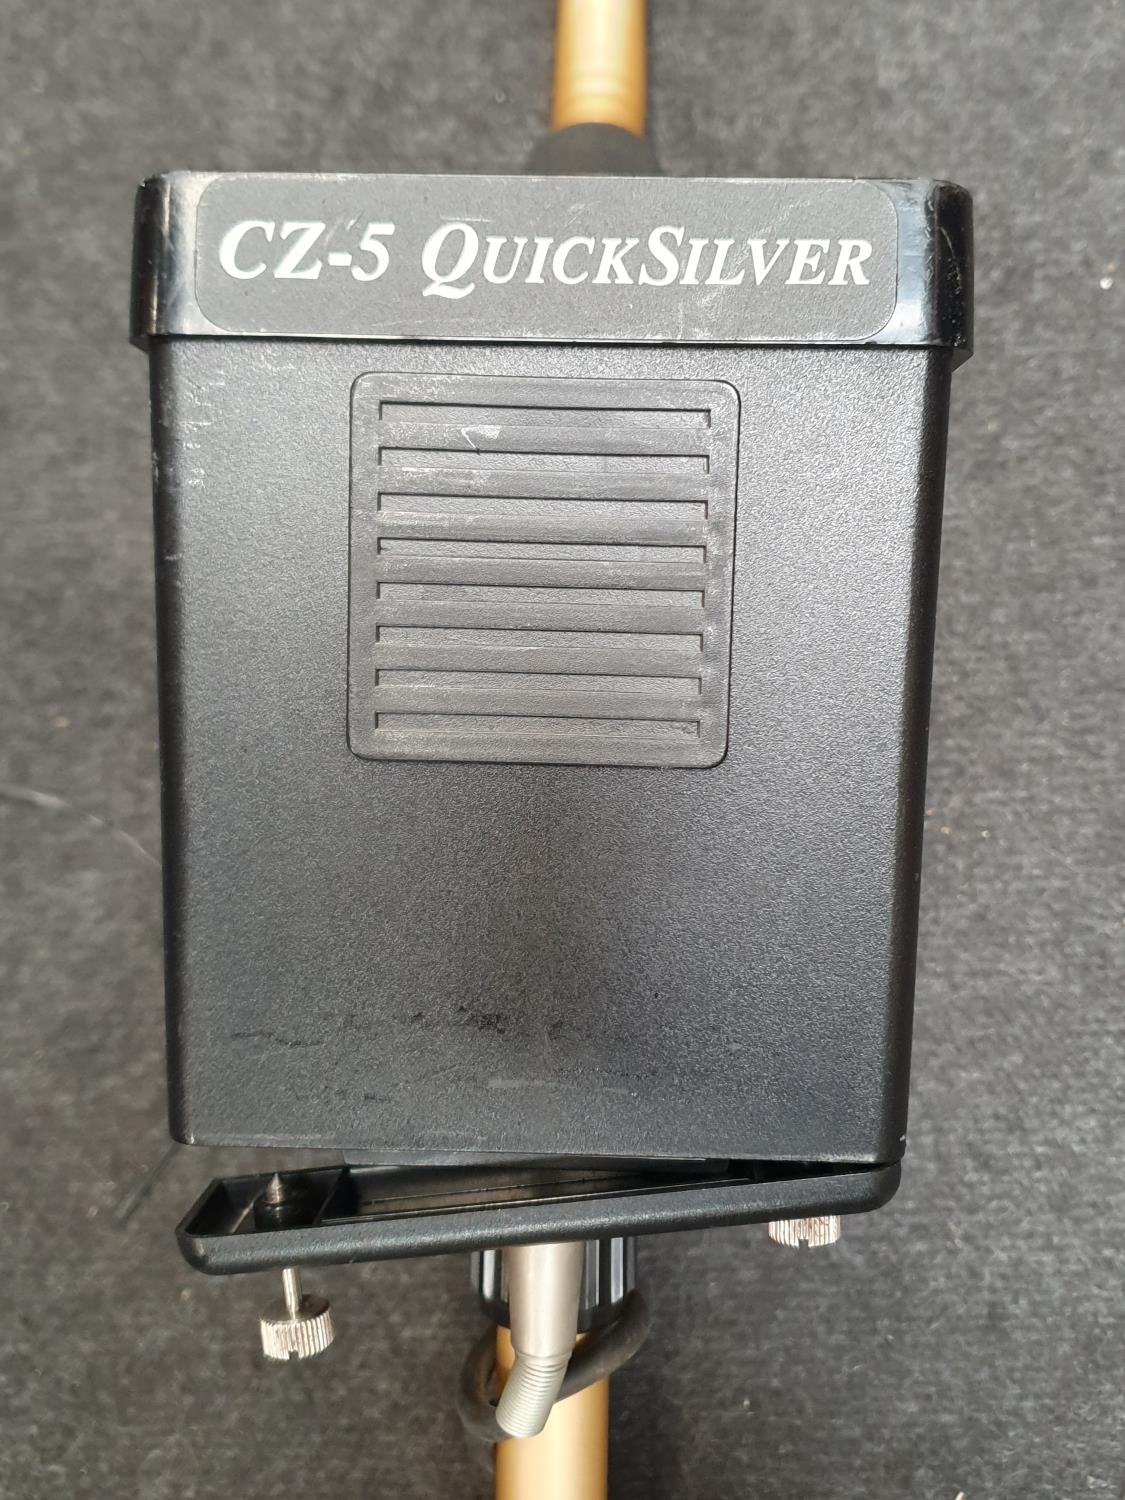 Fisher CZ-5 metal detector